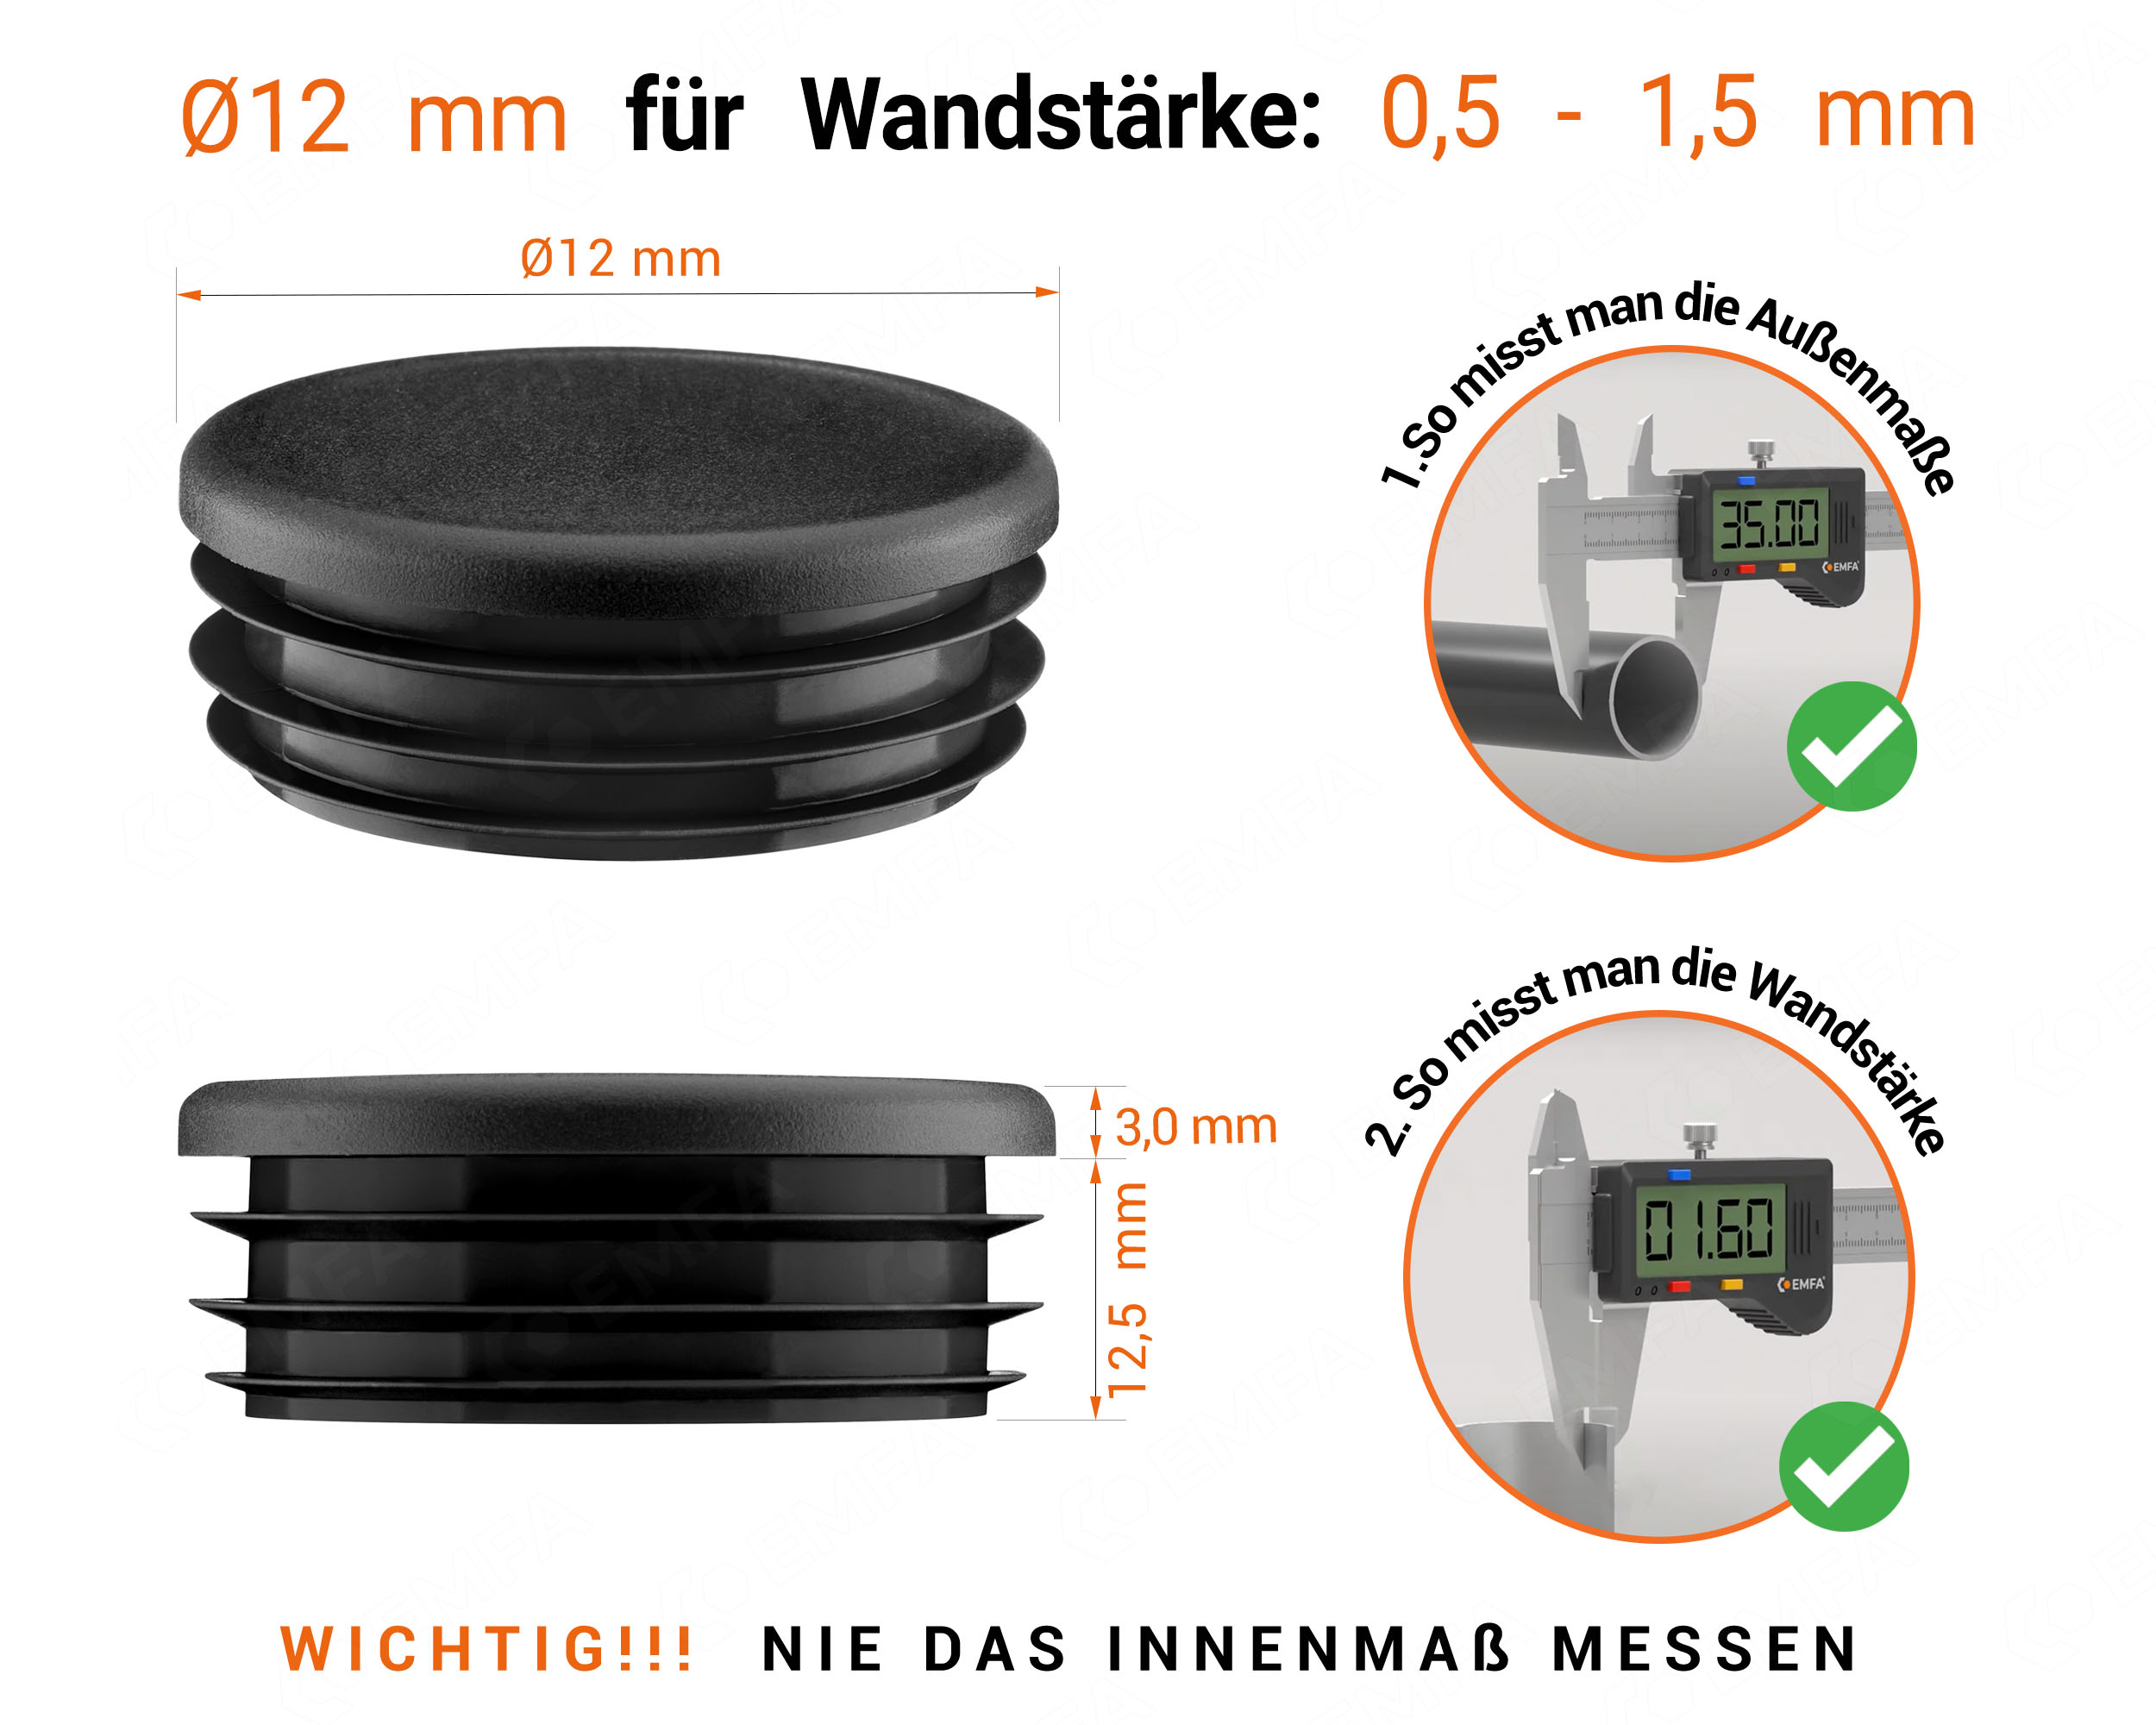 Schwarze Endkappe für Rundrohre in der Größe 12 mm mit technischen Abmessungen und Anleitung für korrekte Messung